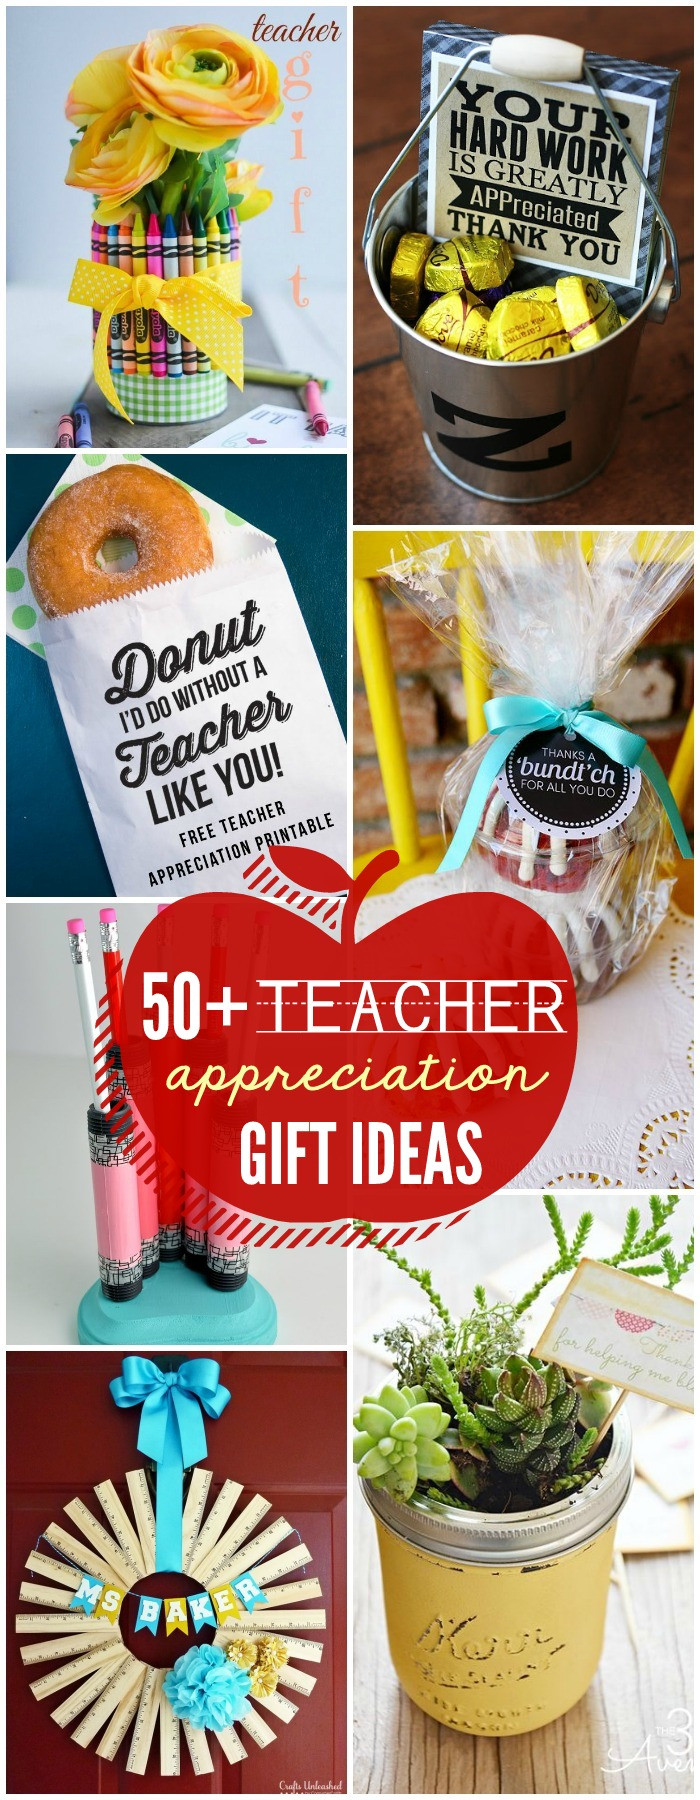 Best ideas about Teacher Appreciation Gift Ideas
. Save or Pin Teacher Appreciation Gift Ideas Now.